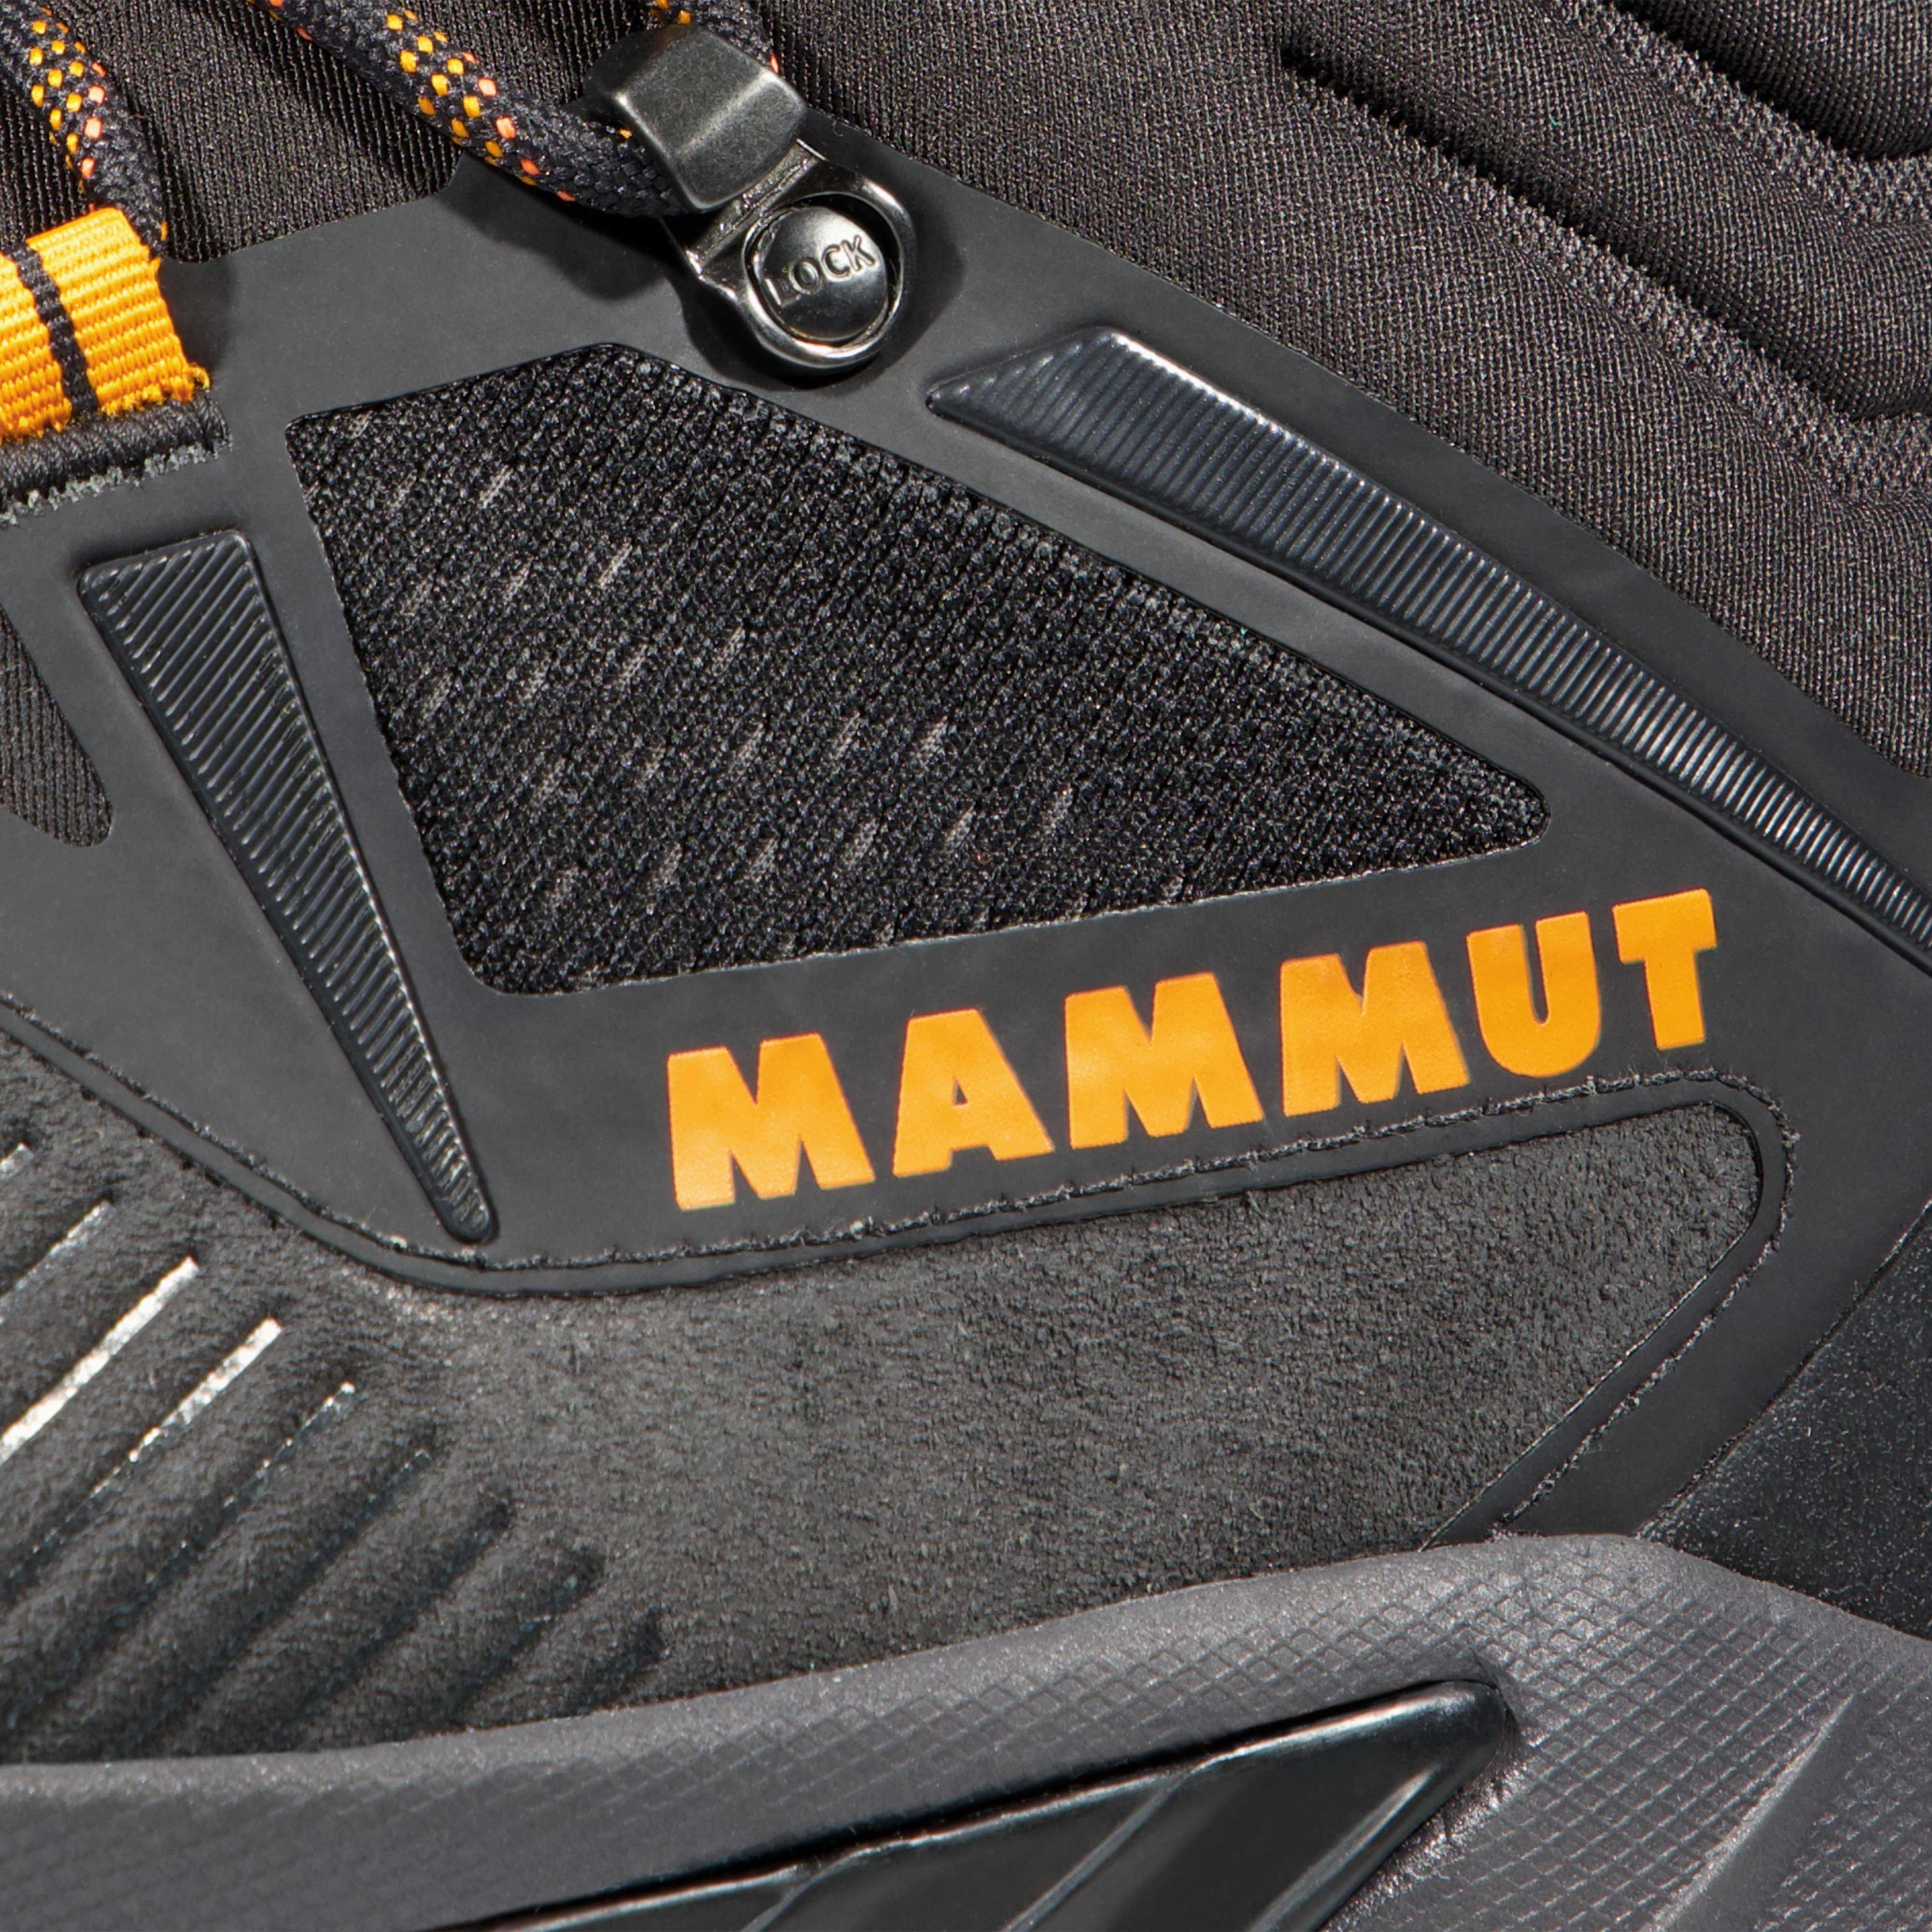 Las Mammut Sapuen High GTX son unas botas de Trekking para todo tipo de  terreno y condiciones con las que tend